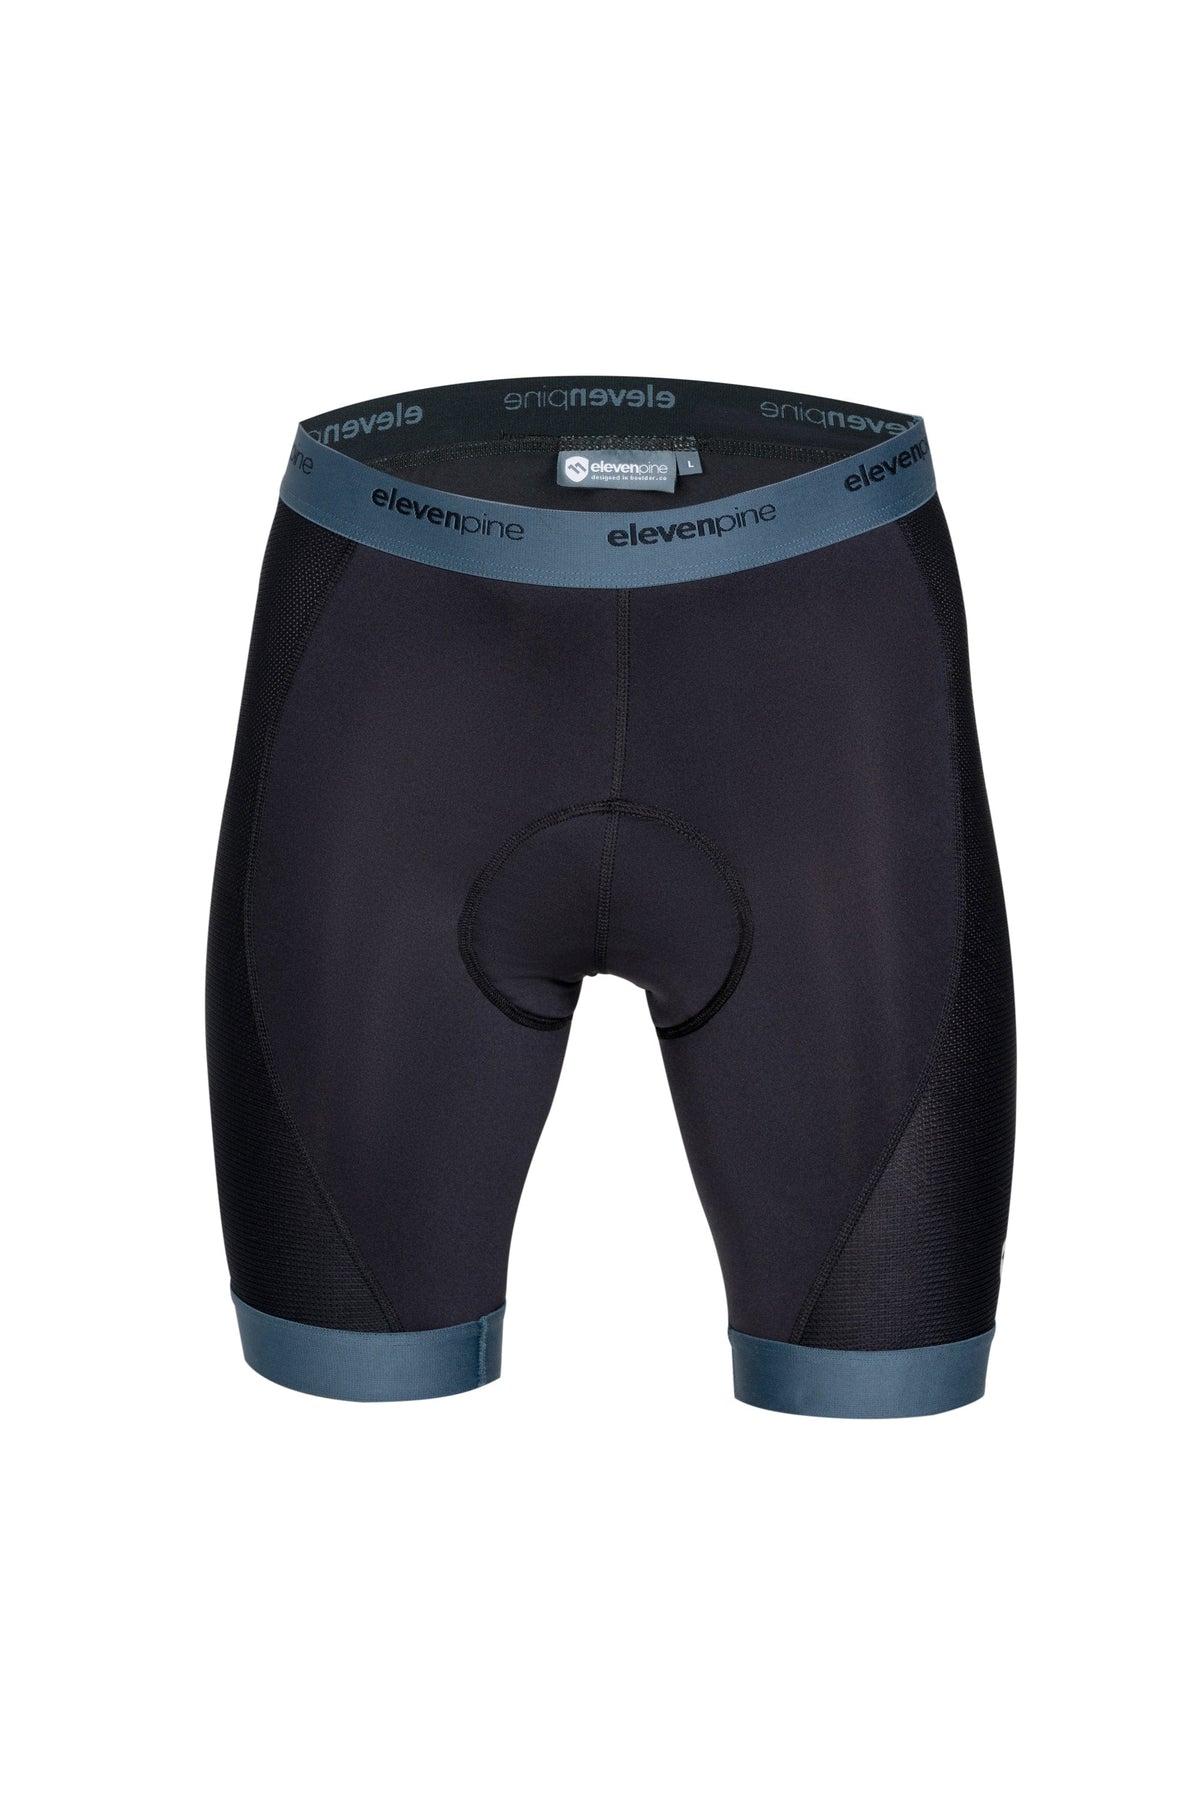 Pre-Order // Liberator Liner for Men-Shorts-ELEVENPINE